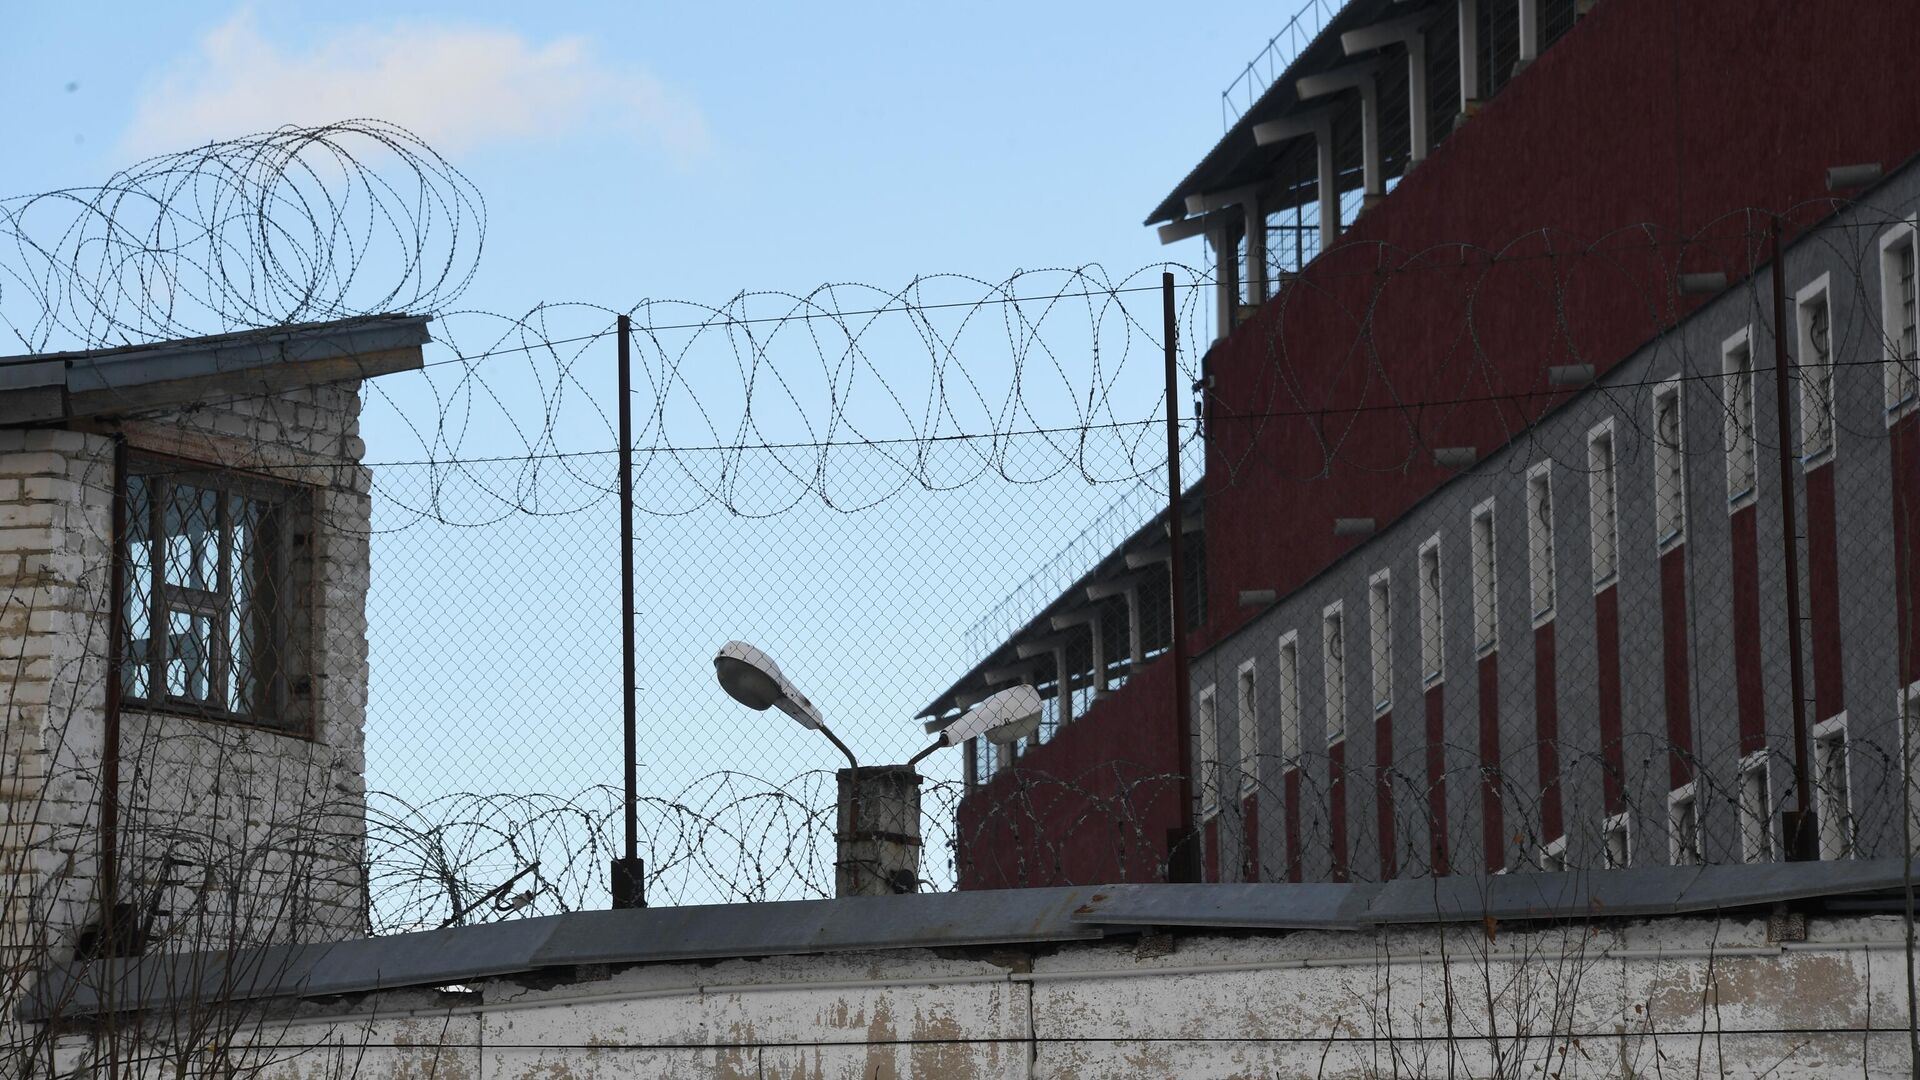 В Ростове возбудили дело из-за связанных в тюремной больнице заключенных